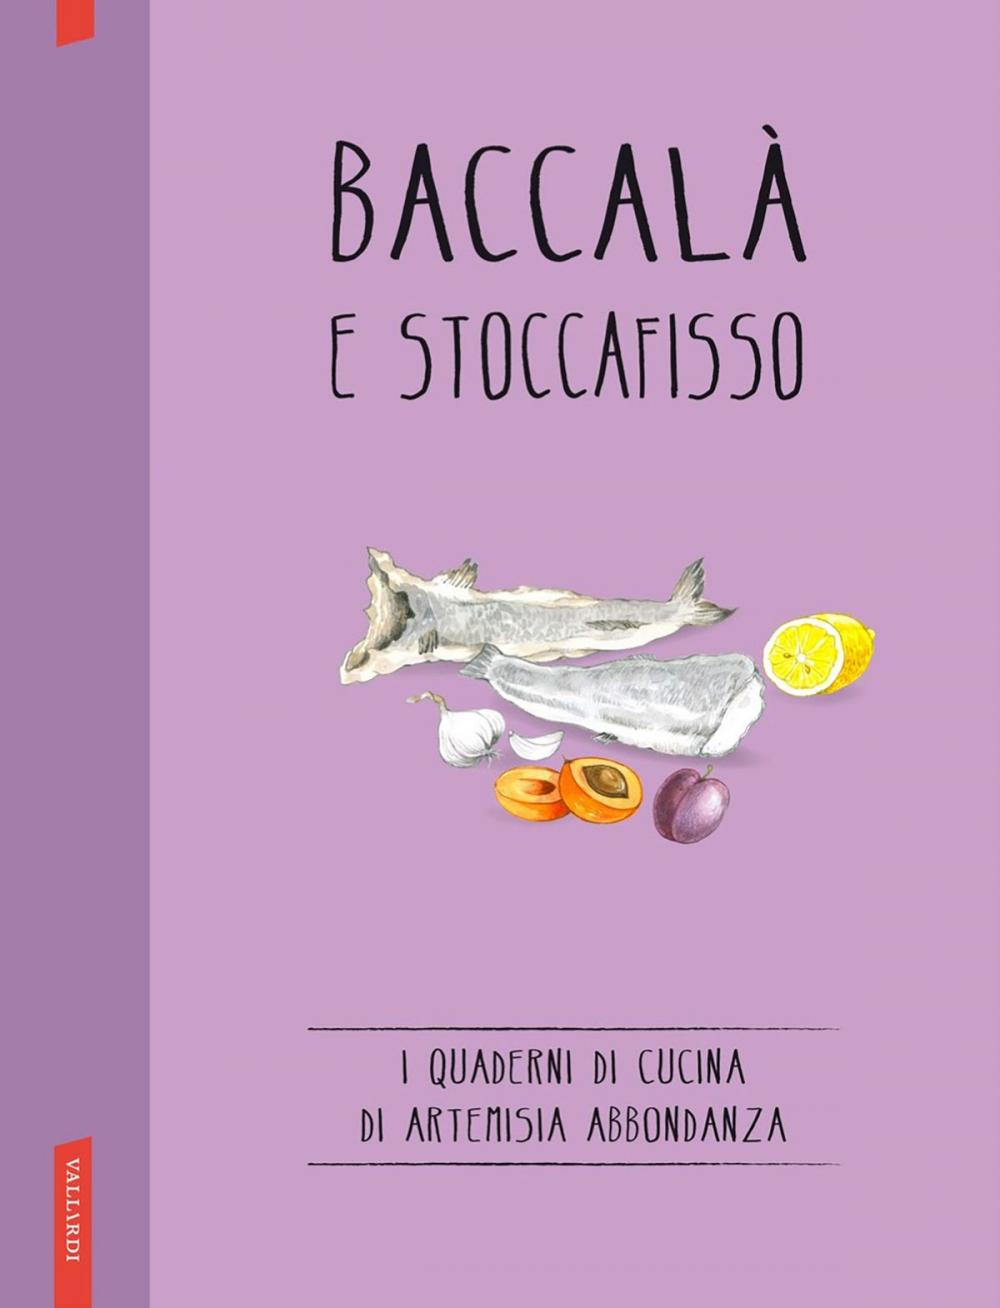 Big bigCover of Baccalà e stoccafisso